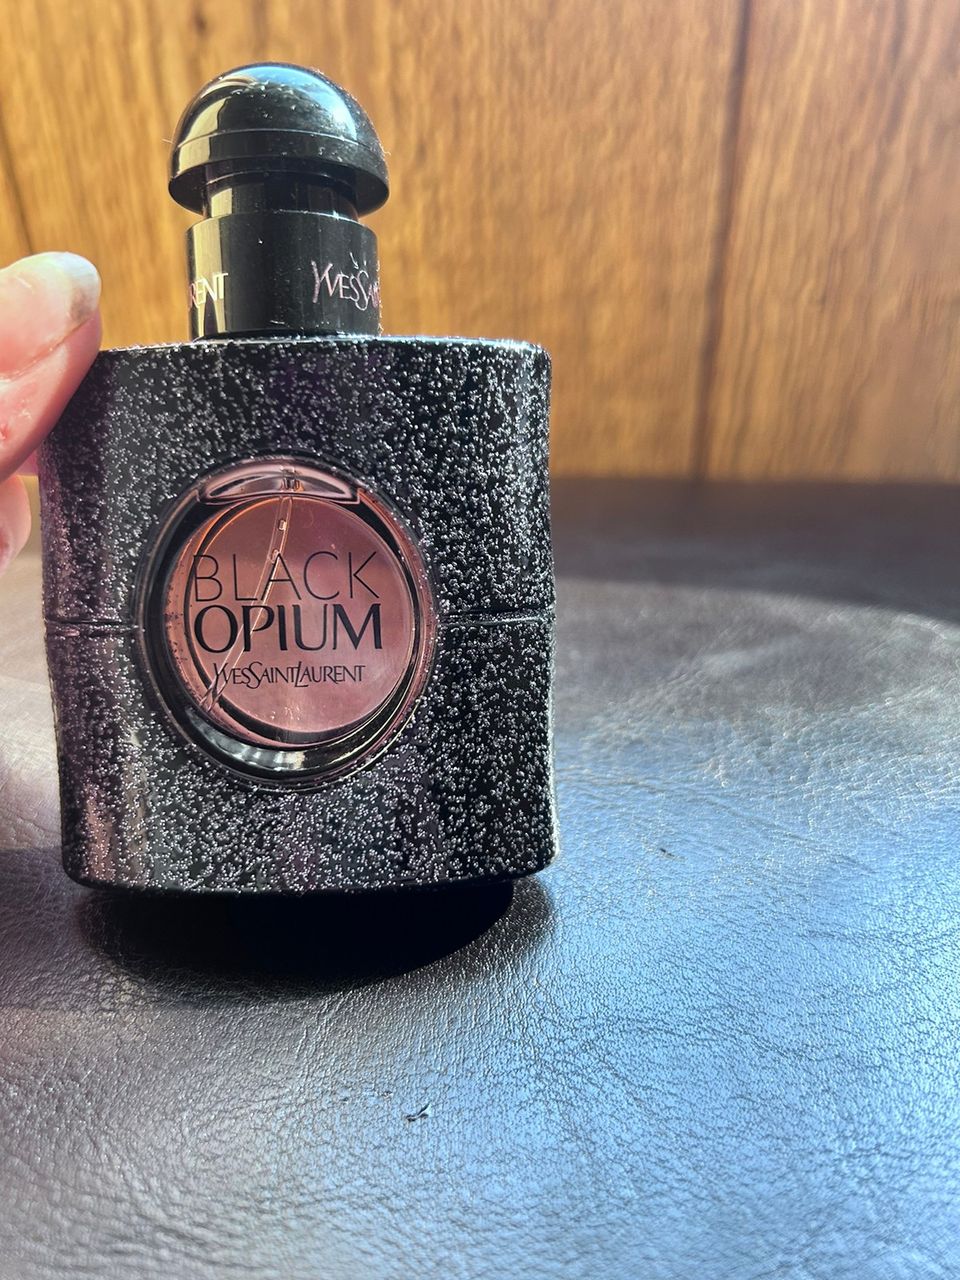 Black opium hajuvesi